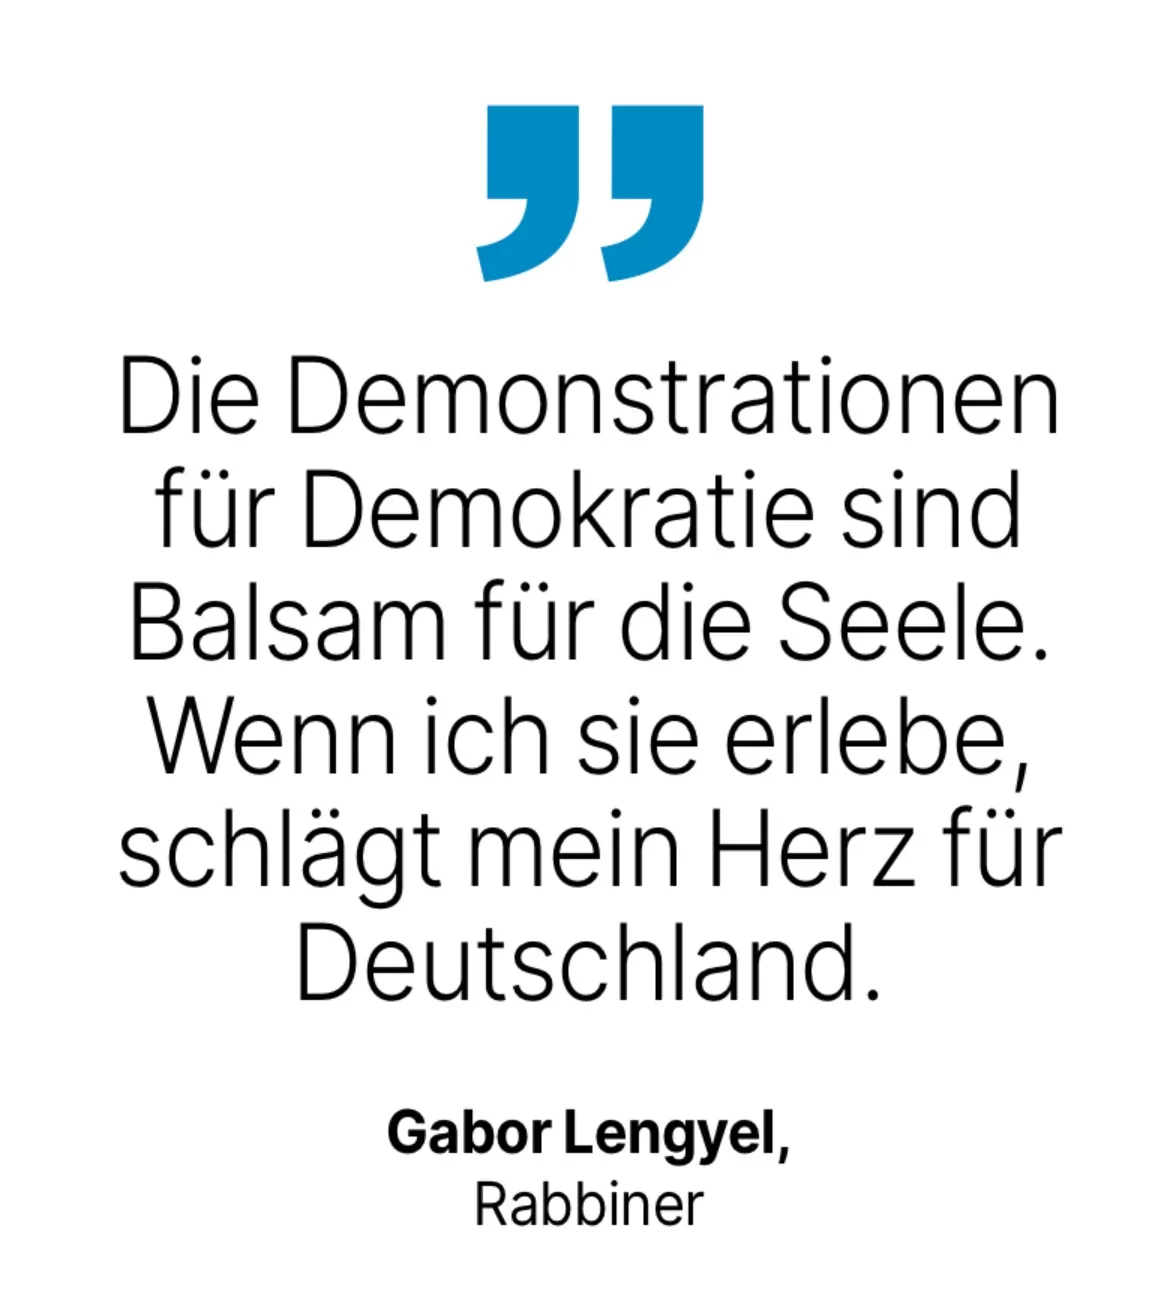 Gabor Lengyel, Rabbiner: Die Demonstrationen für Demokratie sind Balsam für die Seele. Wenn ich sie erlebe, schlägt mein Herz für Deutschland.